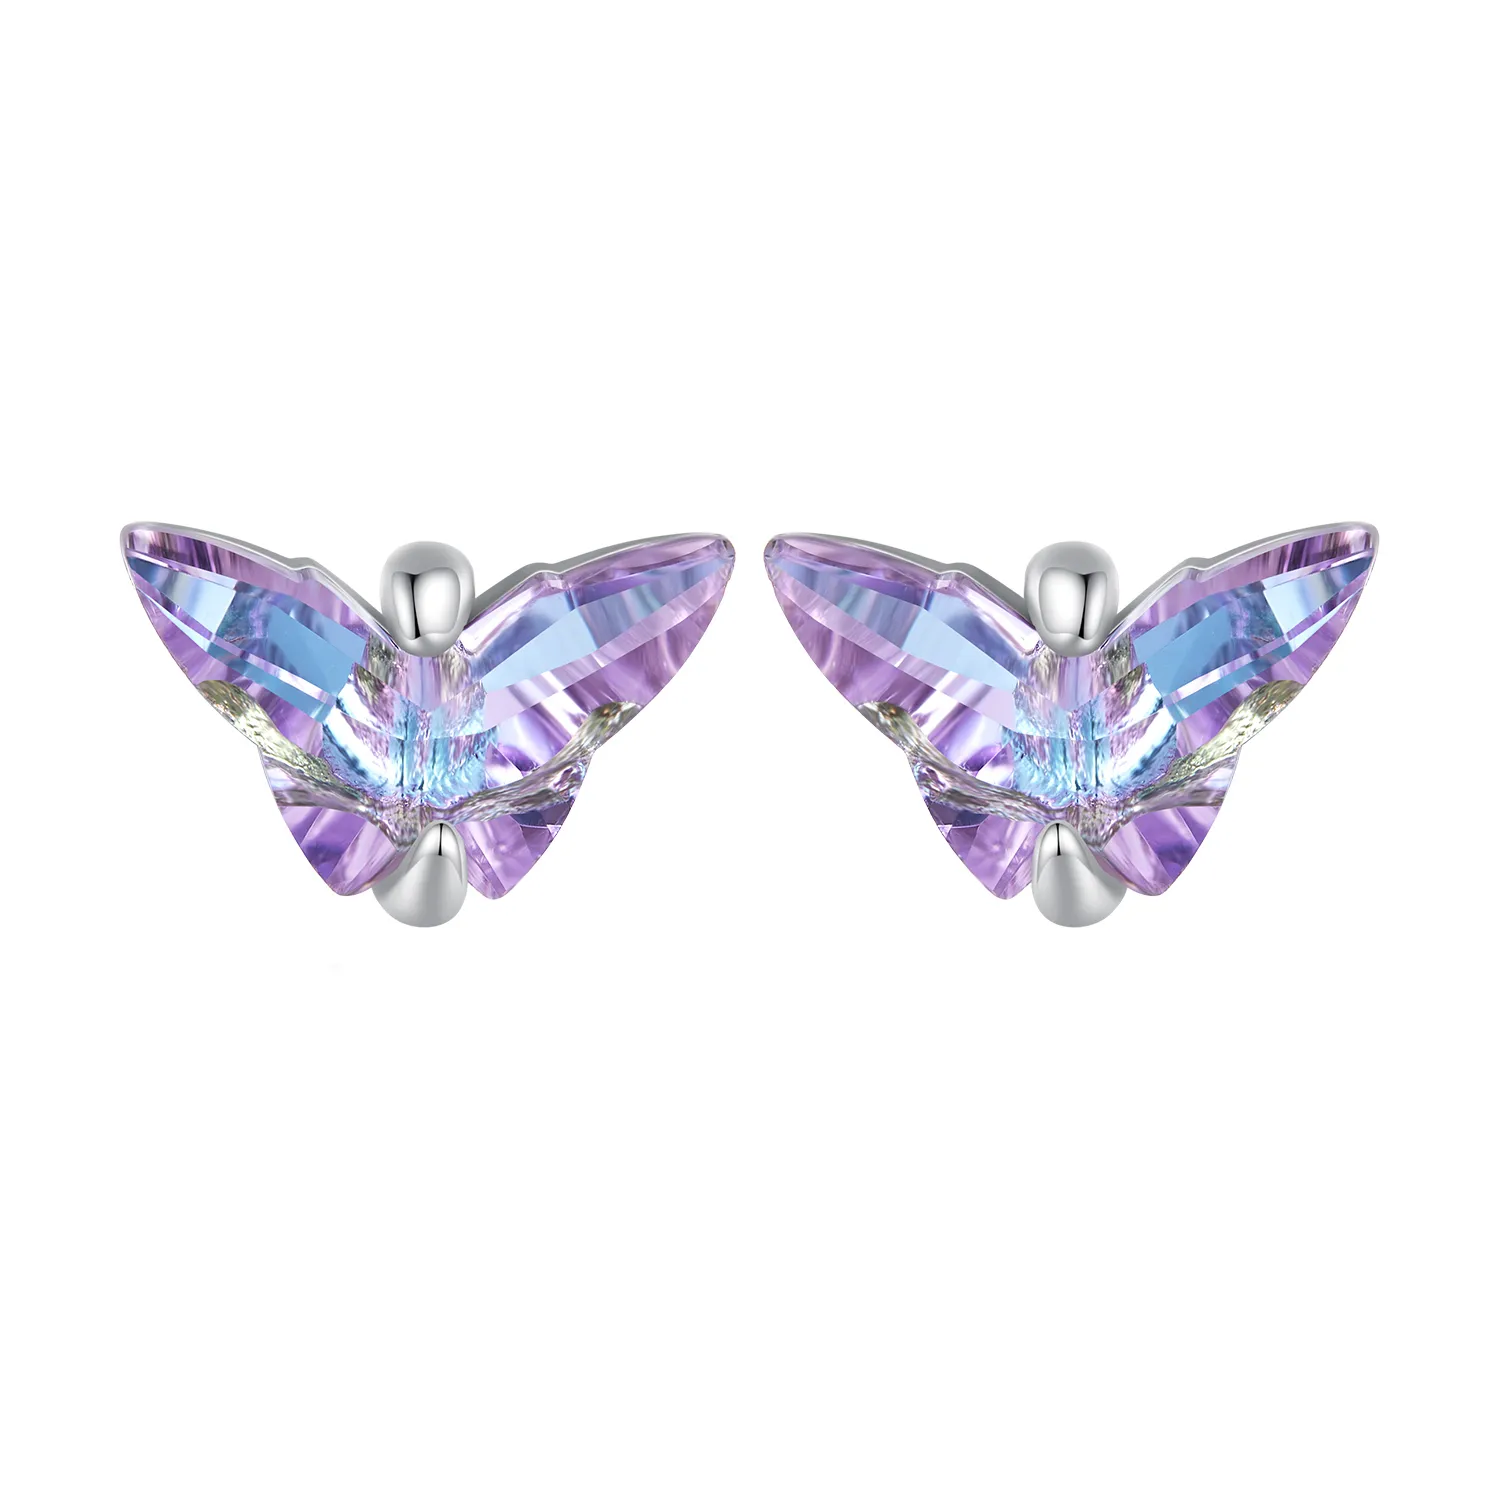 Bijuterii Pandora în stil fluture, cercei cu șurub - BSE797